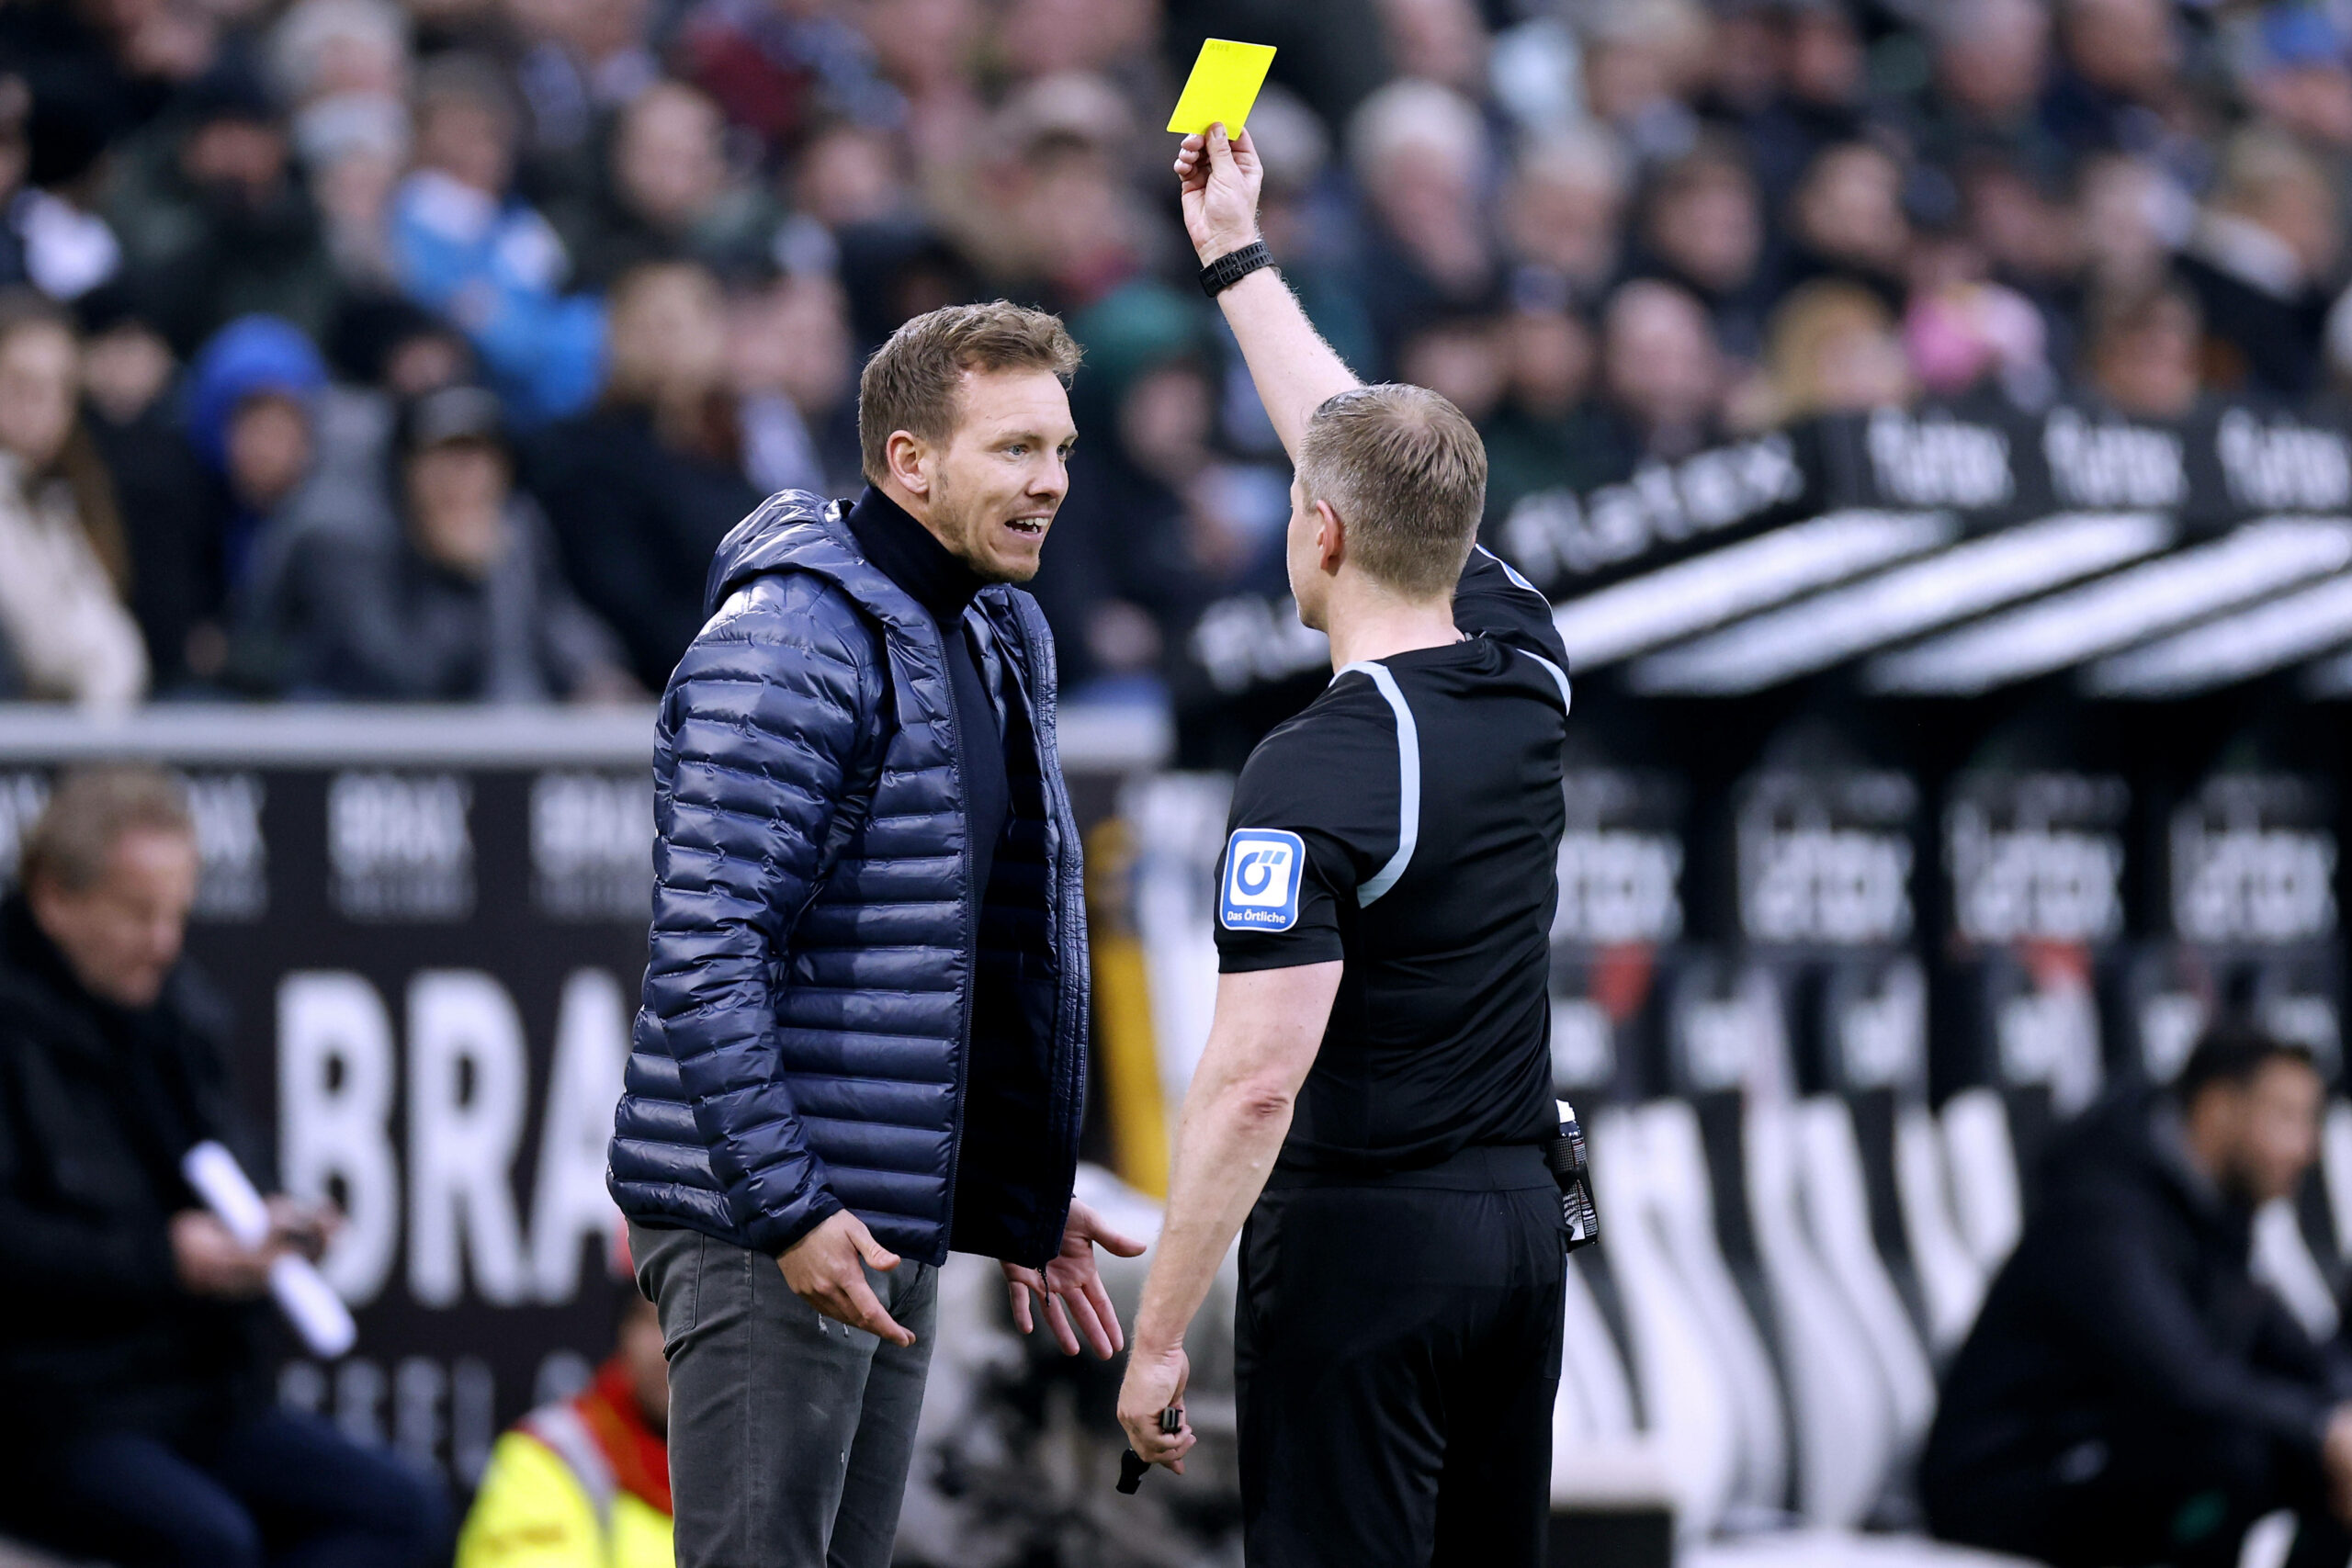 Schiedsrichter Tobias Welz verwarnt Bayern-Trainer Julian Nagelsmann mit einer gelben Karte